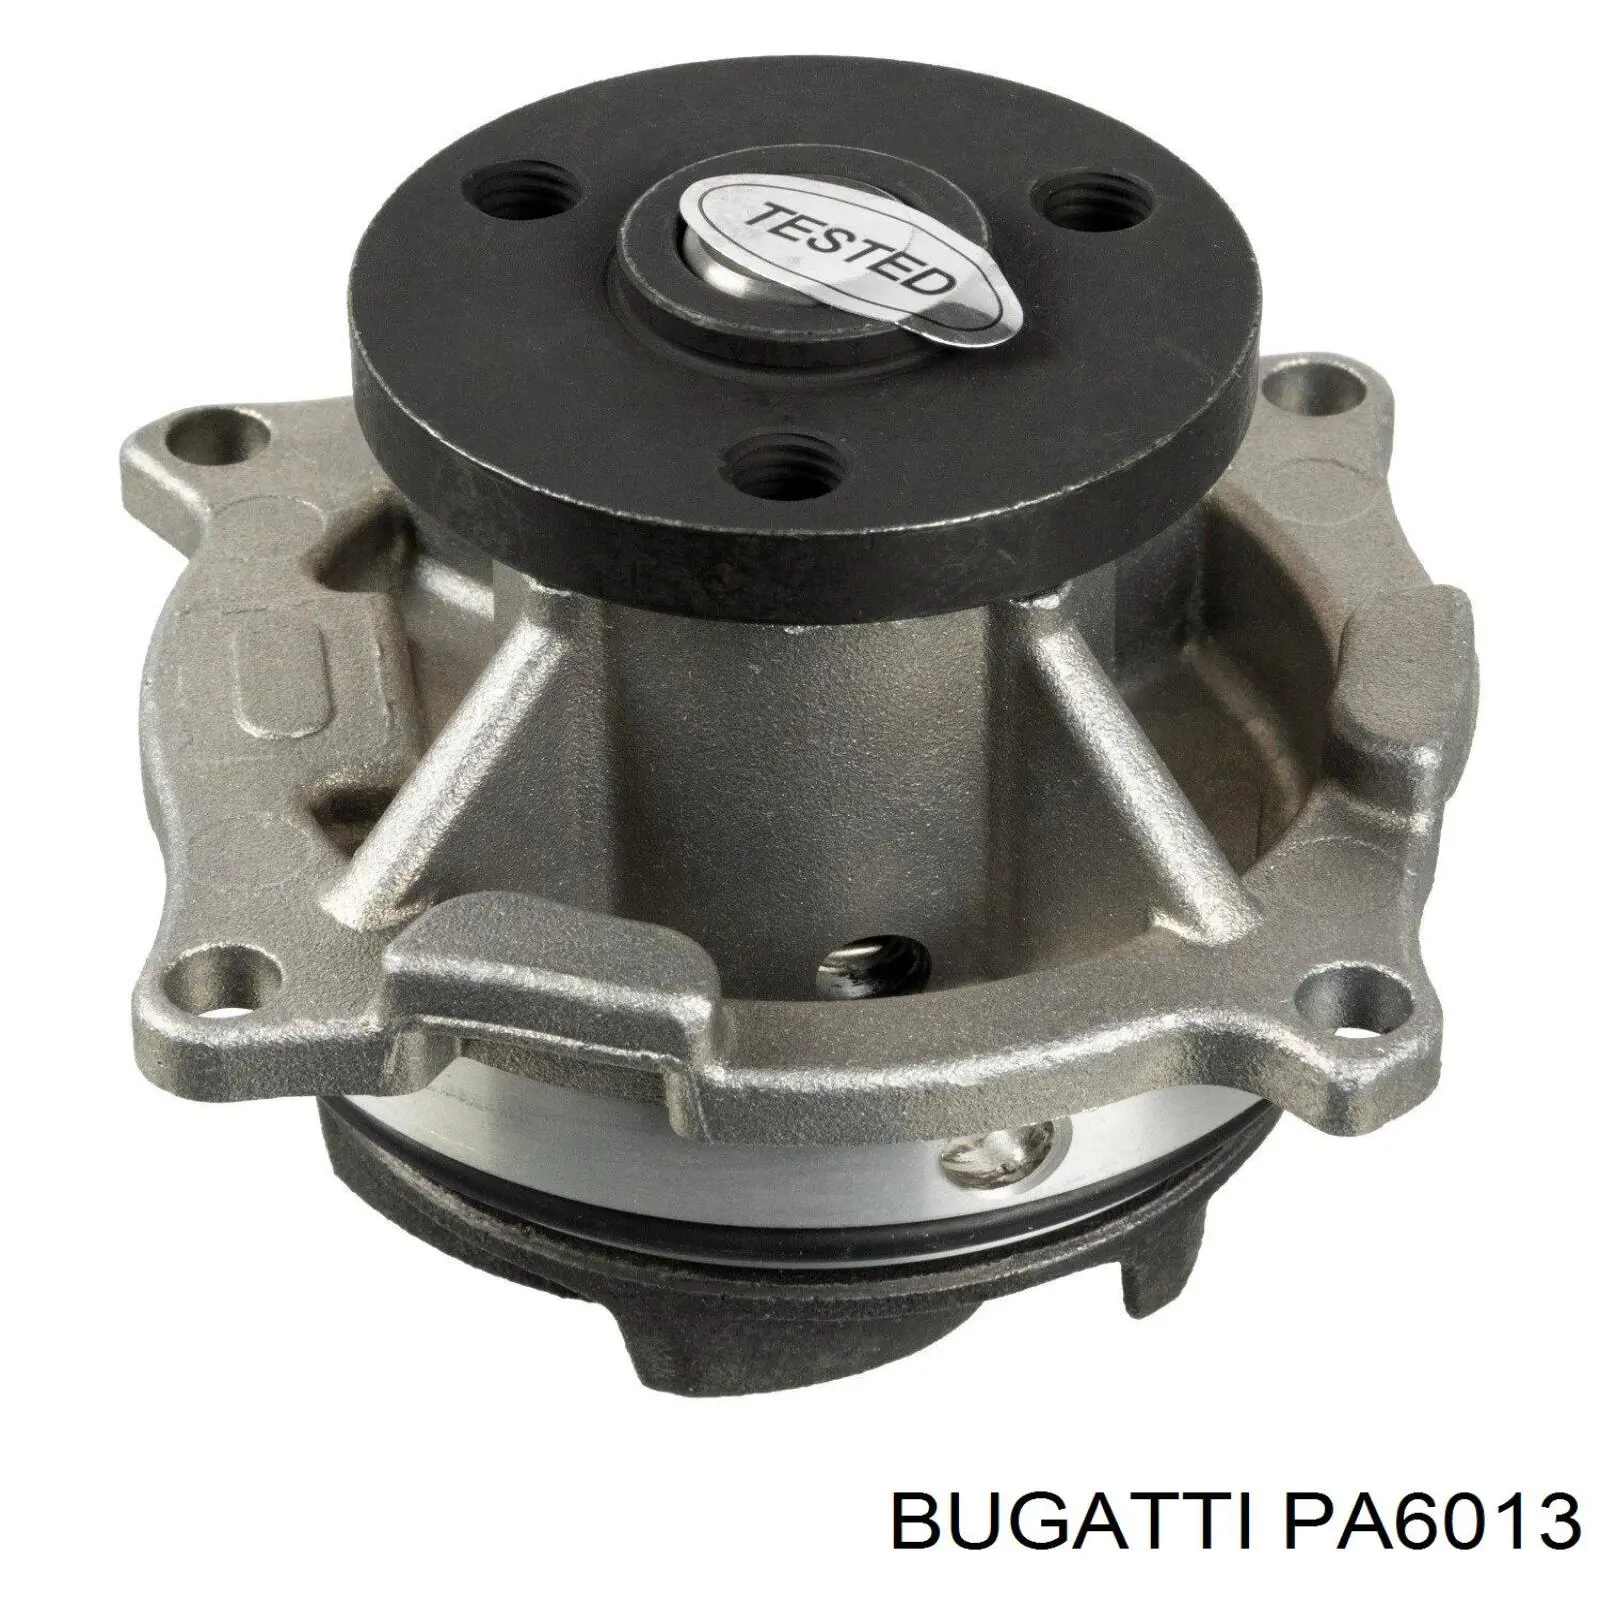 PA6013 Bugatti bomba de agua